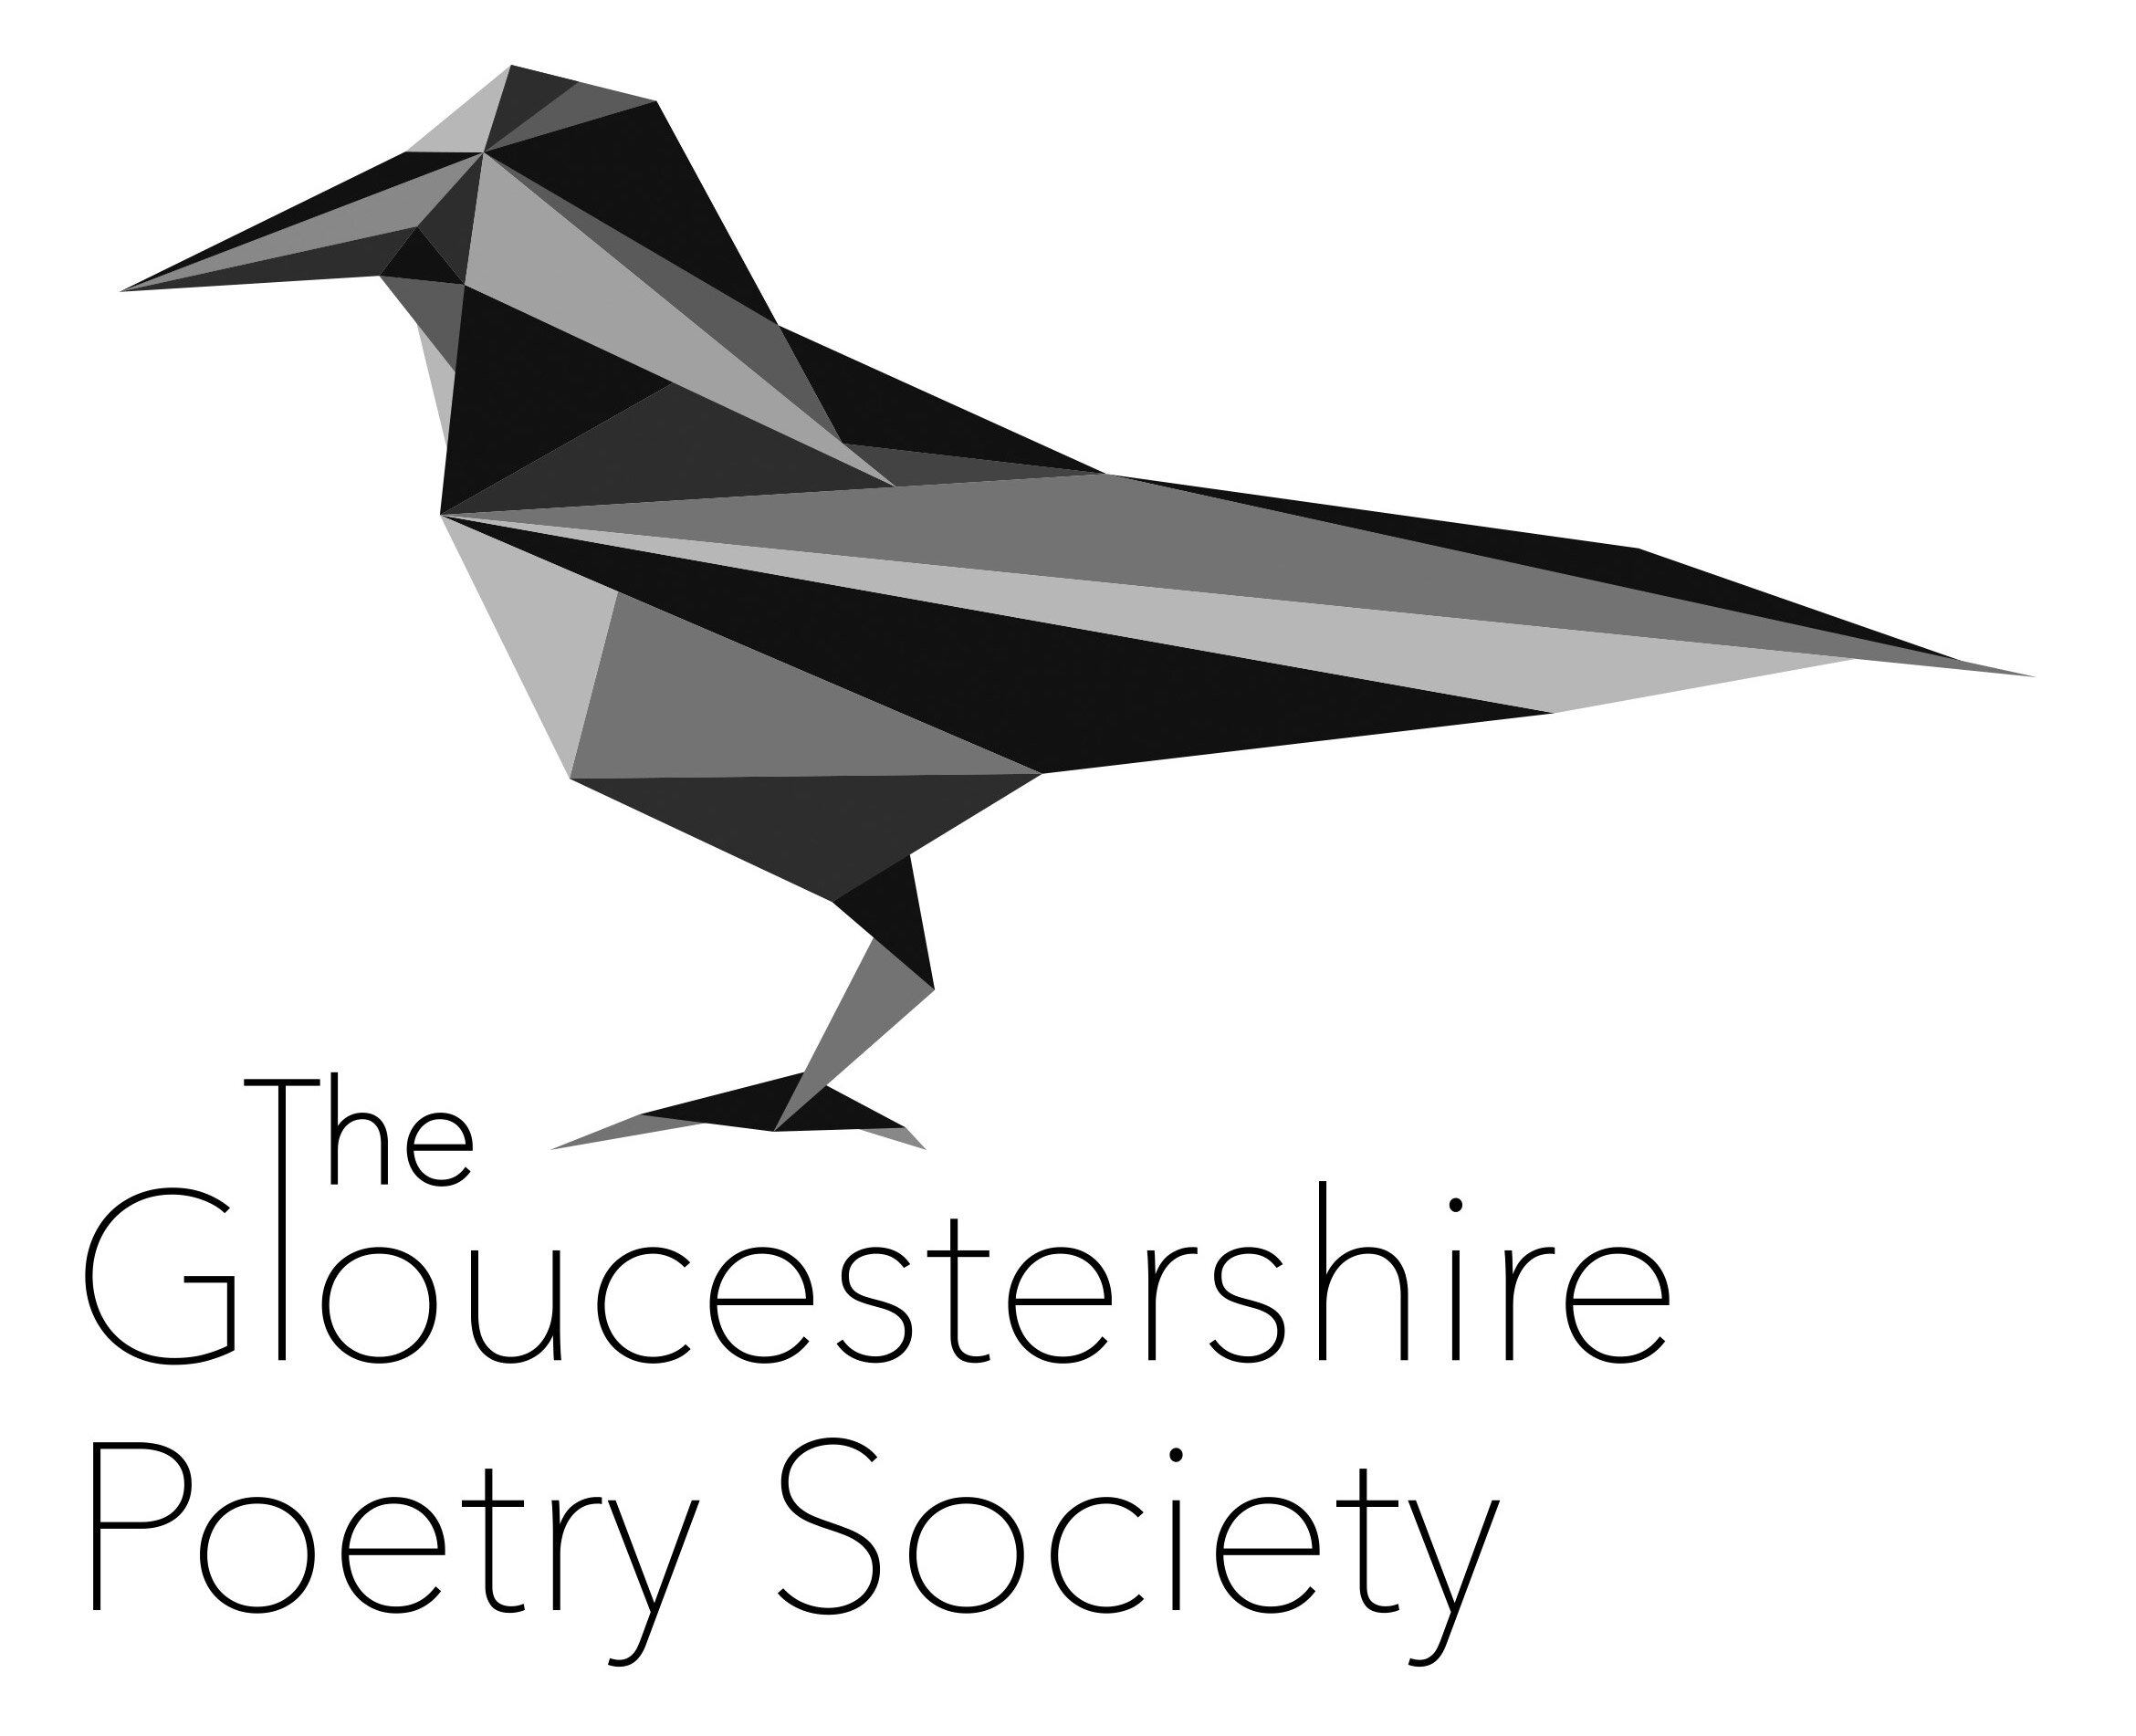 Lockdown Poems – Ledbury Poetry Festival